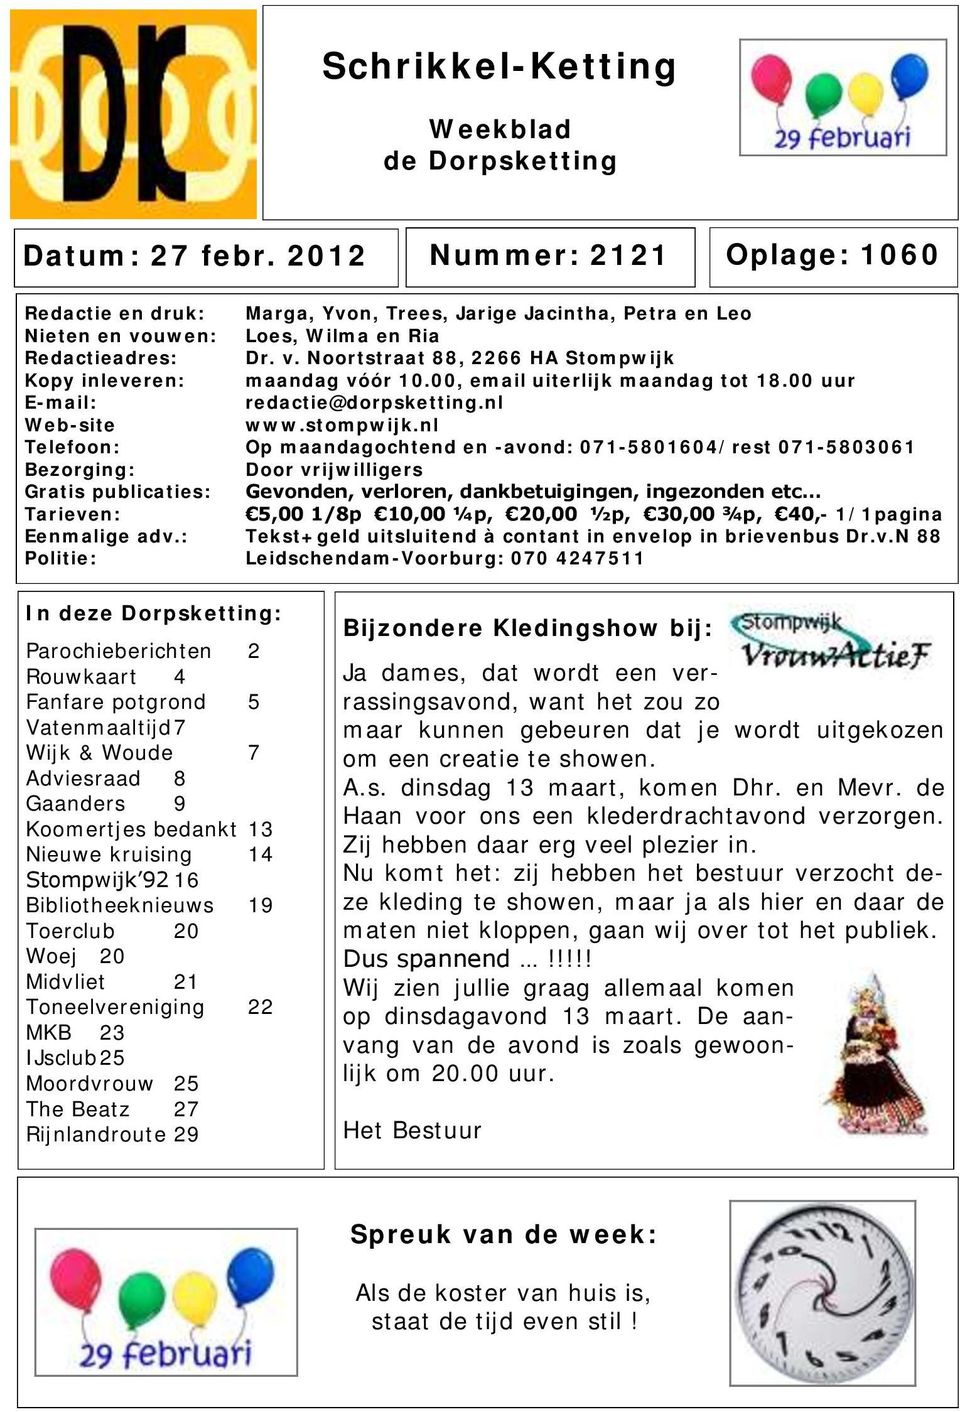 00, email uiterlijk maandag tot 18.00 uur E-mail: redactie@dorpsketting.nl Web-site www.stompwijk.